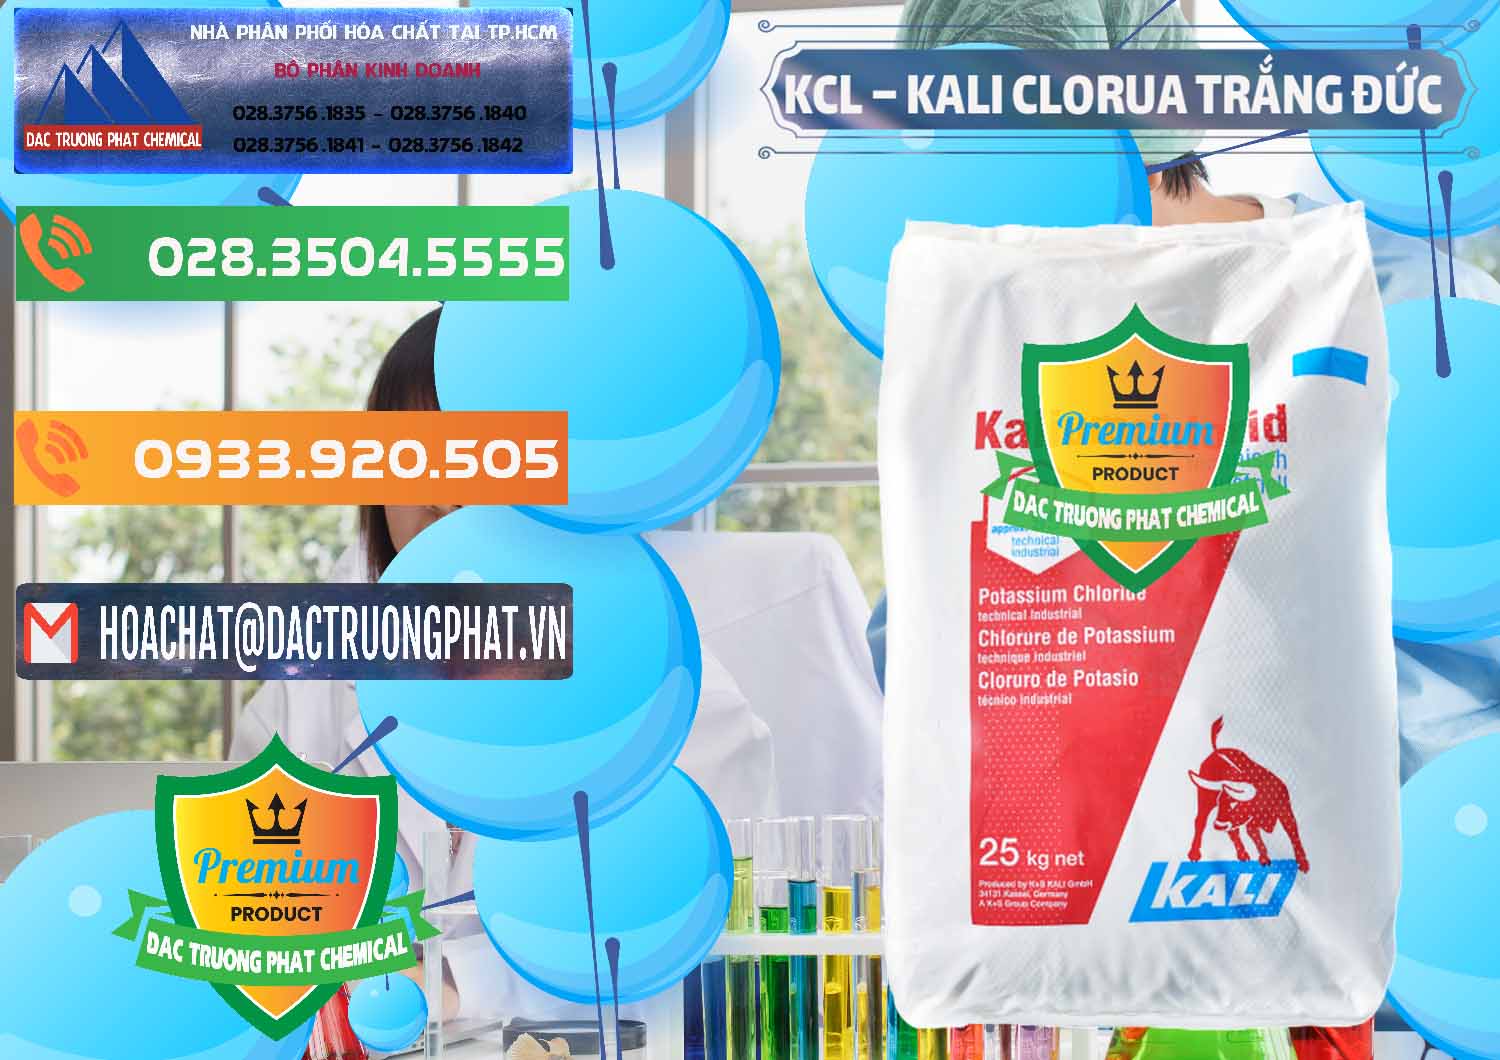 Công ty chuyên bán và phân phối KCL – Kali Clorua Trắng Đức Germany - 0086 - Cty kinh doanh ( cung cấp ) hóa chất tại TP.HCM - hoachatxulynuoc.com.vn